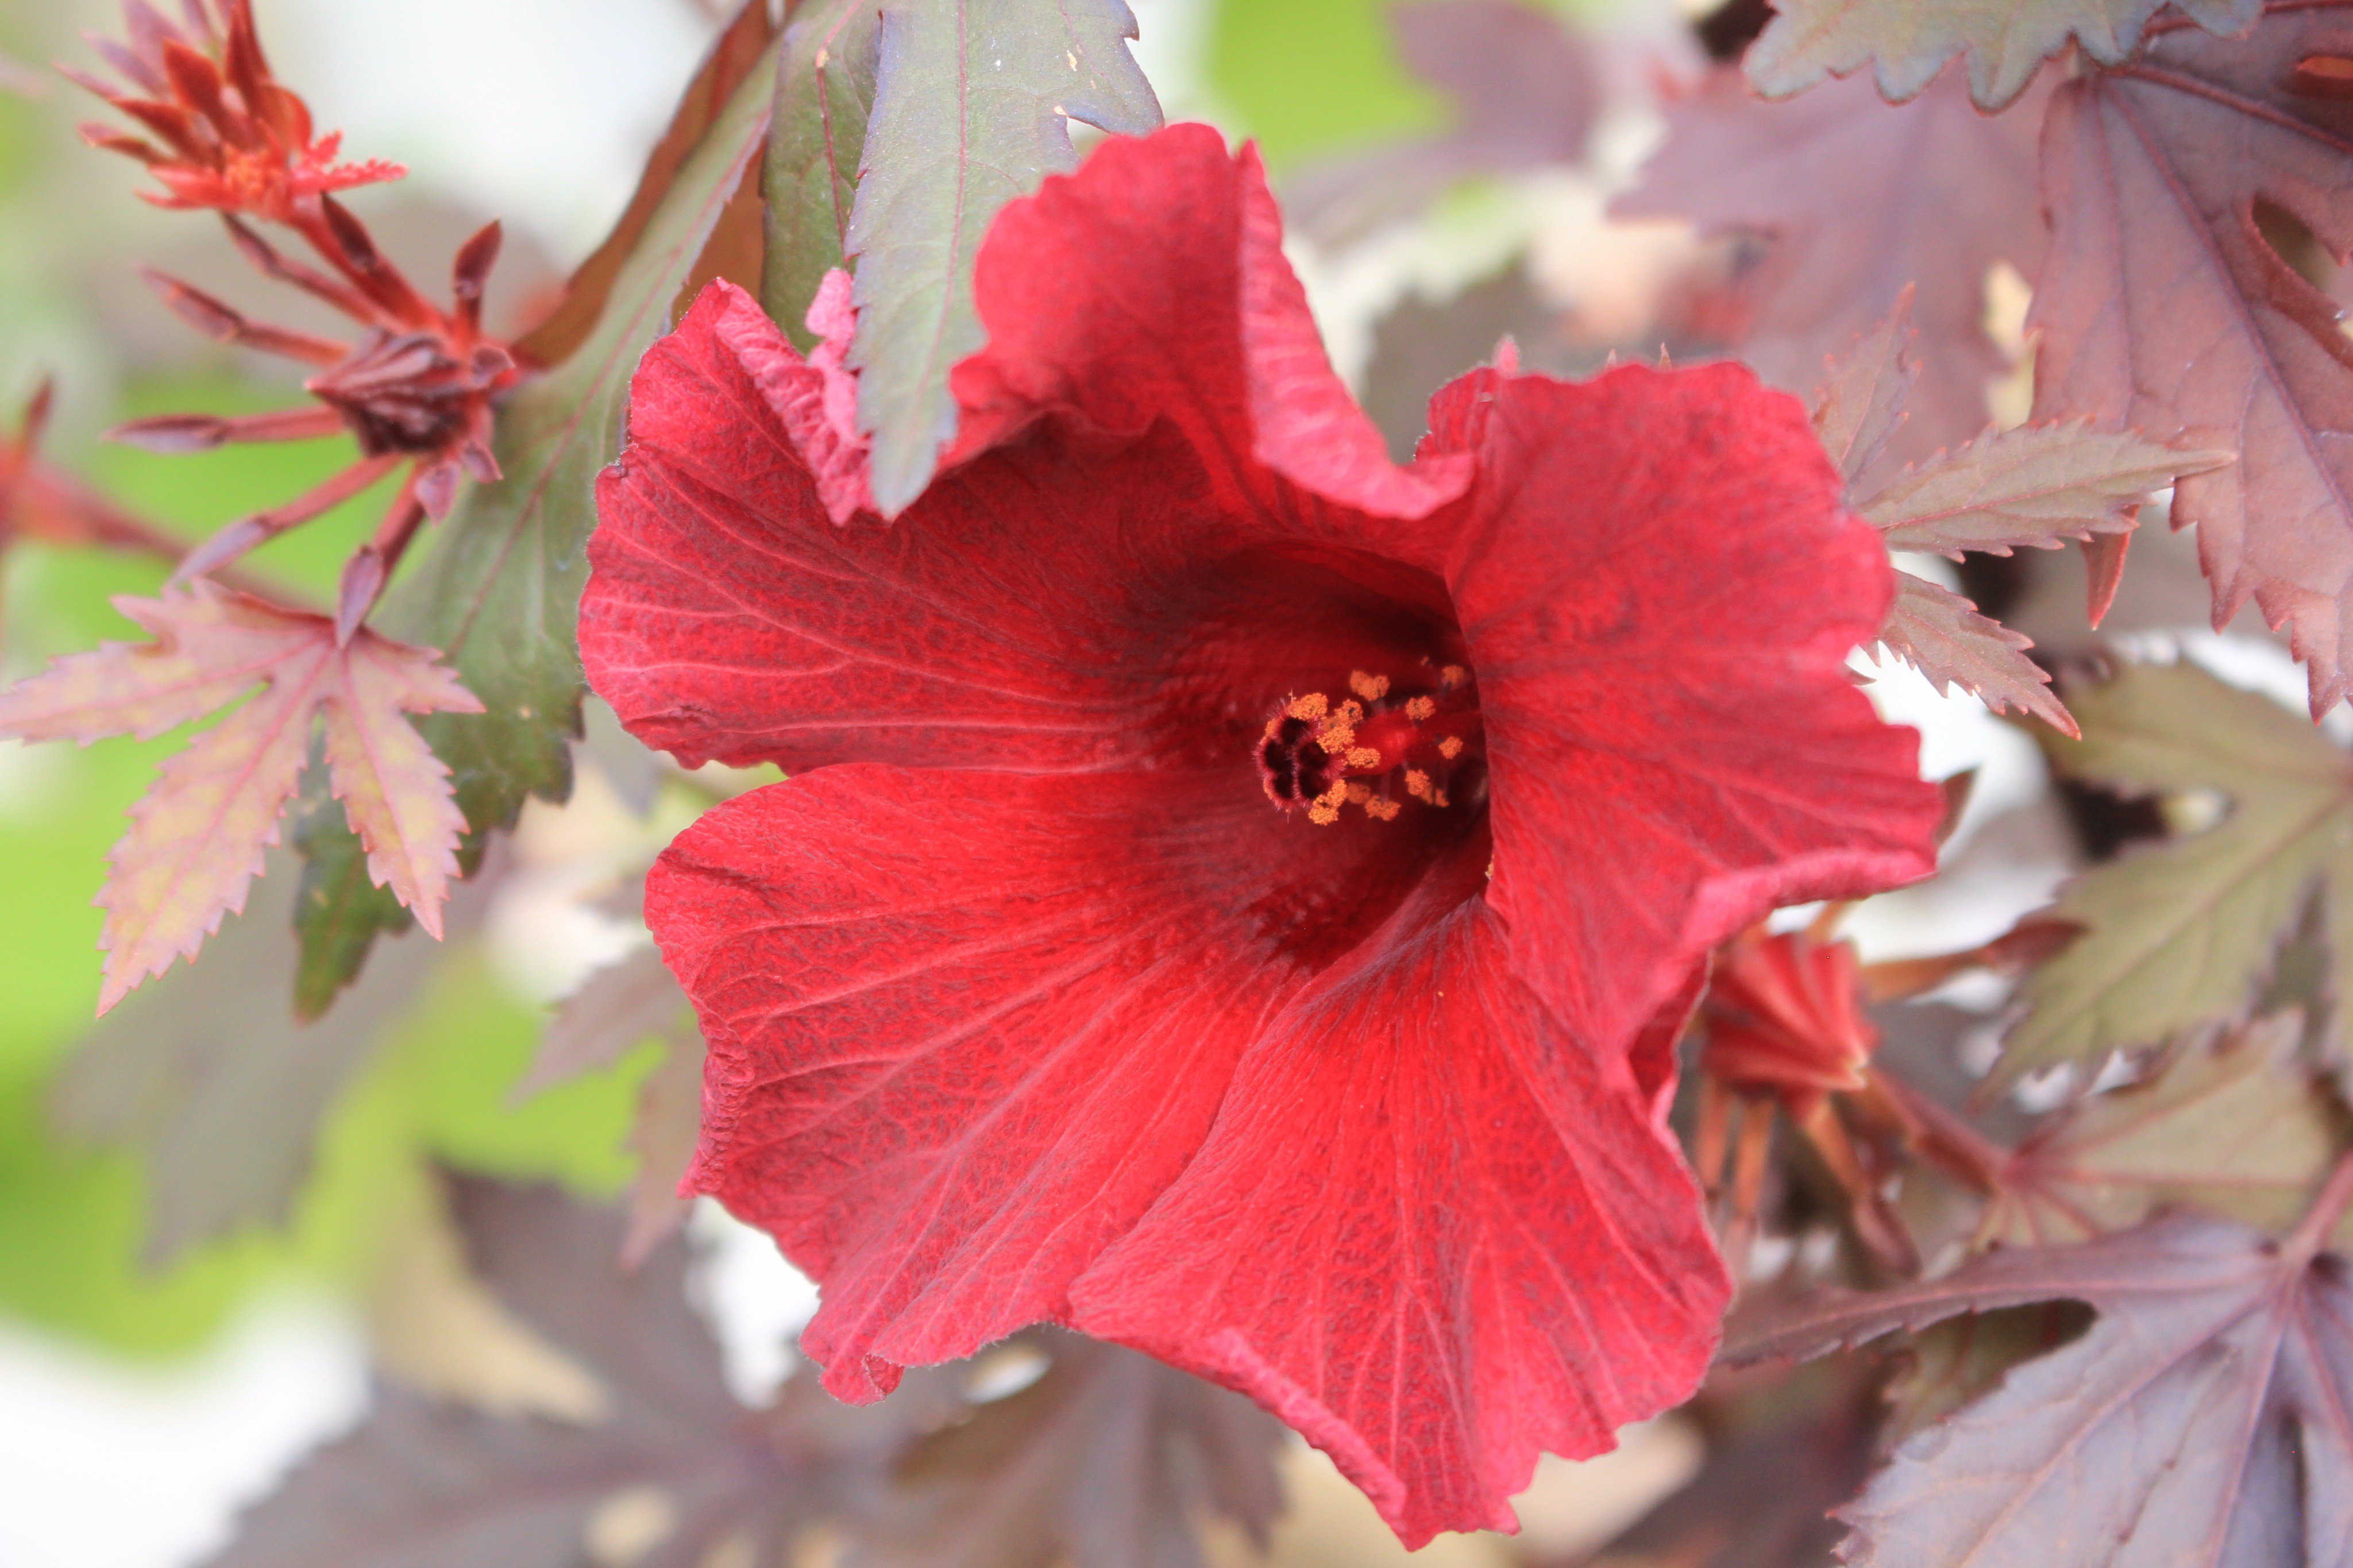 تويتر 咲くやこの花館 على تويتر ハイビスカスワールドにて シックな色合いの花を発見 こちらは ハイビスカス アケトセラ ブラックキング 明るい色が多い ハイビスカス の中で 深い赤の花と葉はとても目立っています 花の寿命は短く キレイにみられるのは